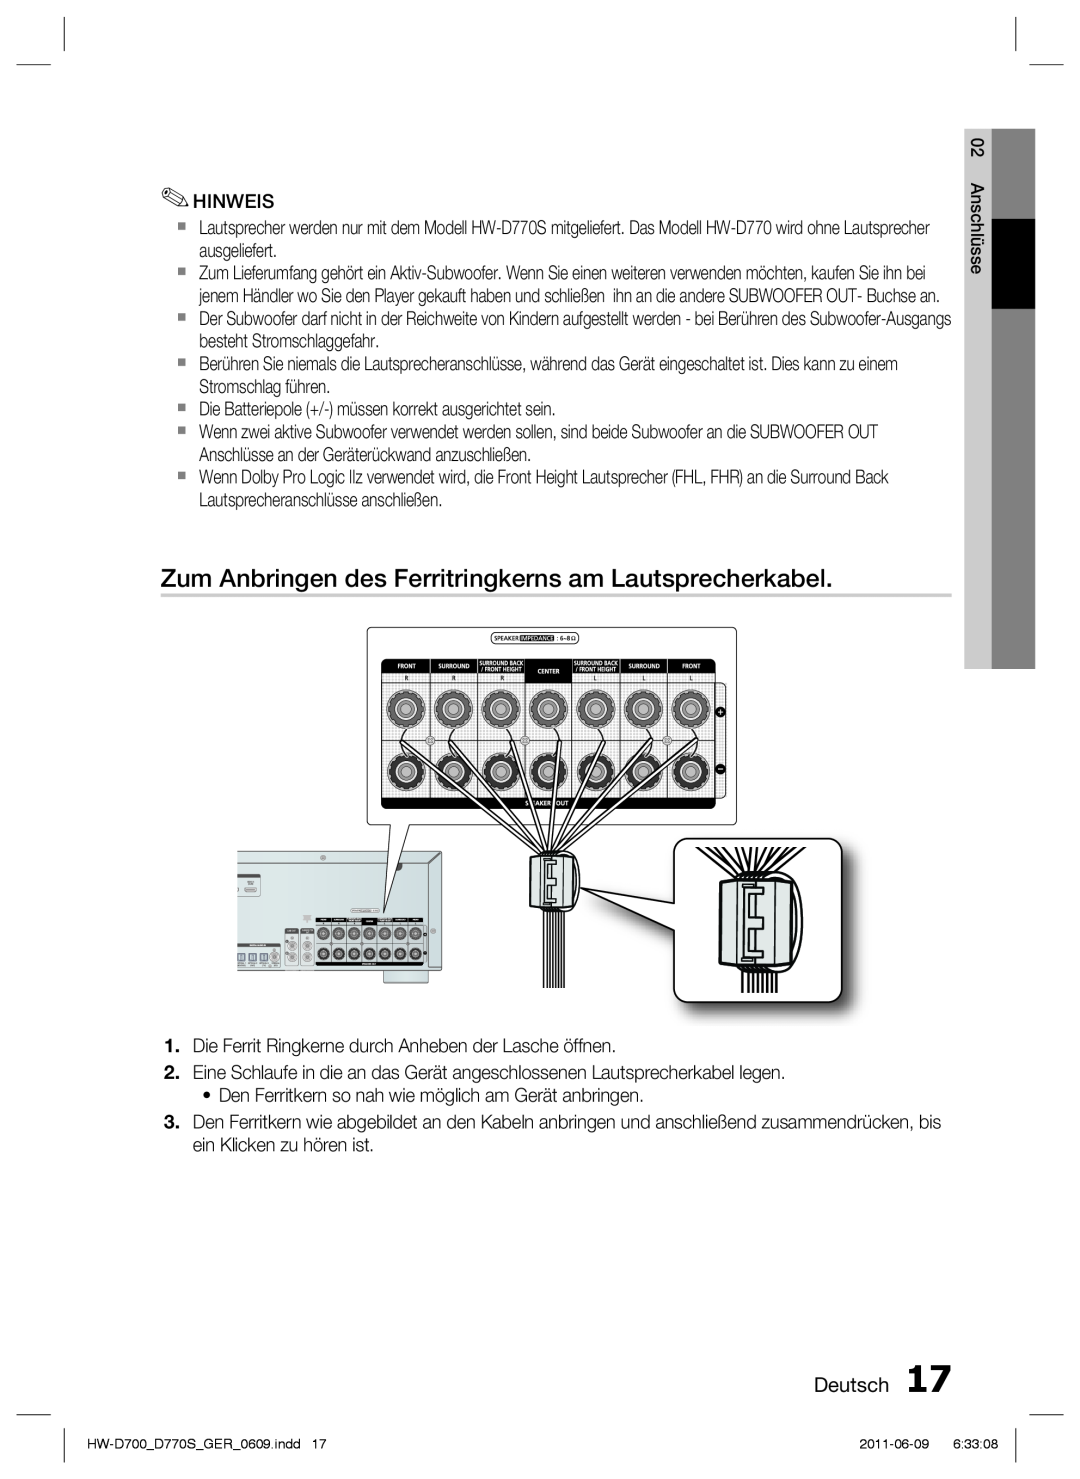 Samsung HW-D700/EN, HW-D770S/EN manual Zum Anbringen des Ferritringkerns am Lautsprecherkabel, Deutsch 